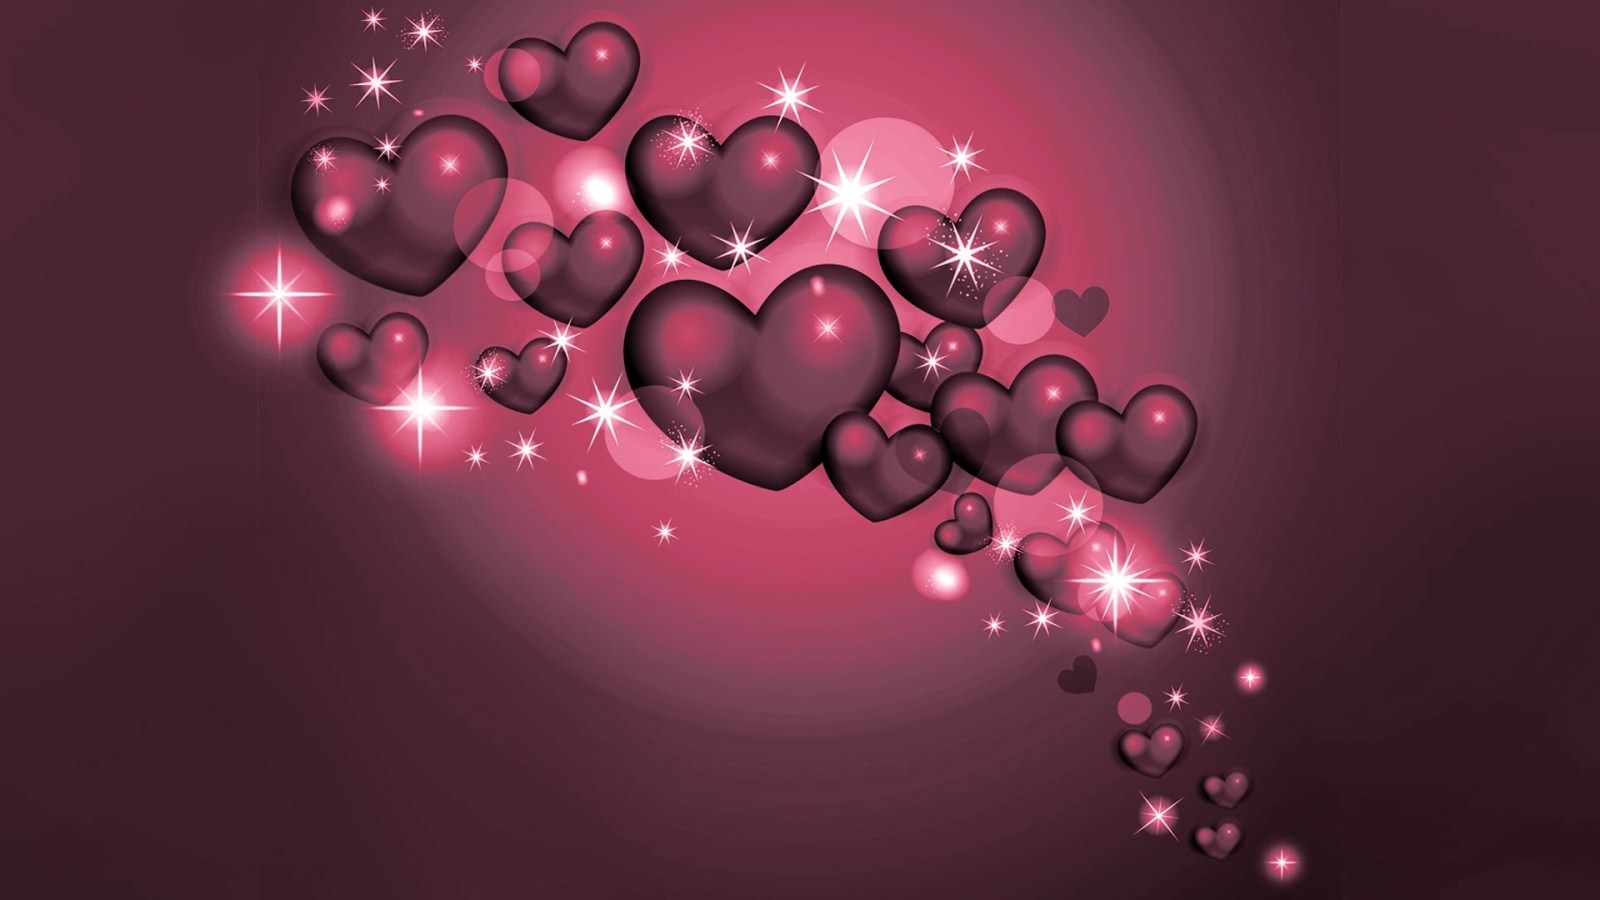 Love Heart 3d HD Wallpaper 1080p